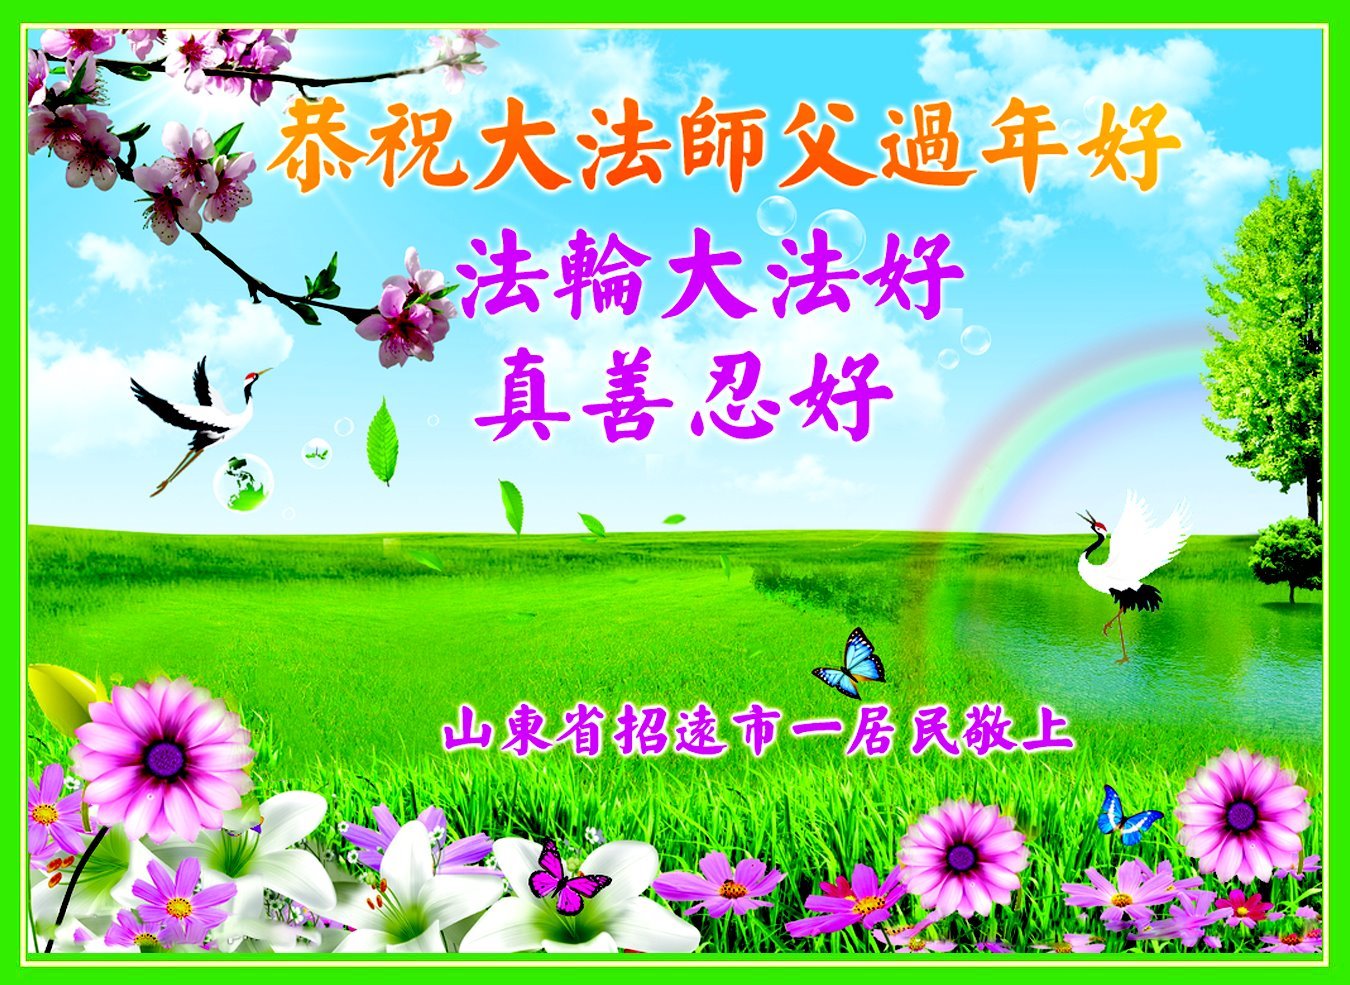 Image for article Podporovatelé Falun Dafa přejí Mistru Li Hongzhi šťastný čínský Nový rok